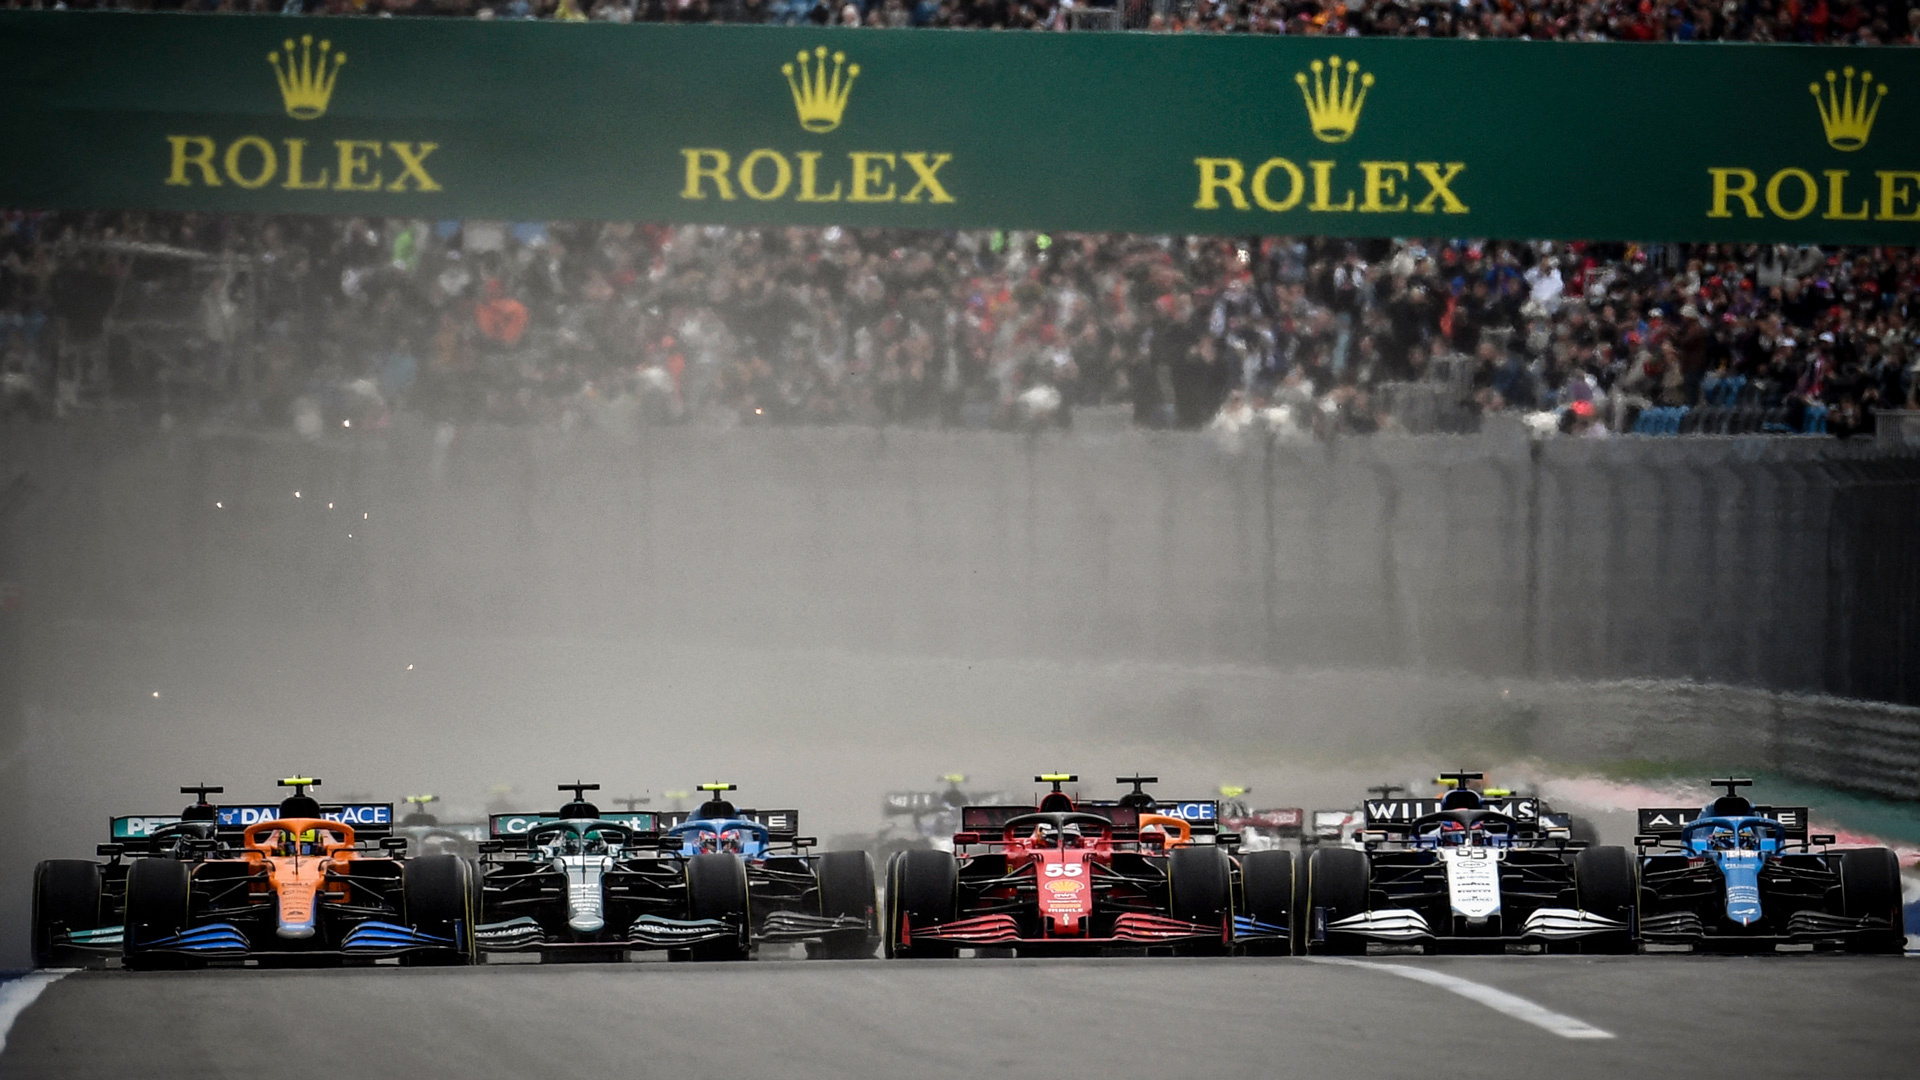 Grand Prix F1, 2022 start times, Formula 1 schedule, Global race updates, 1920x1080 Full HD Desktop